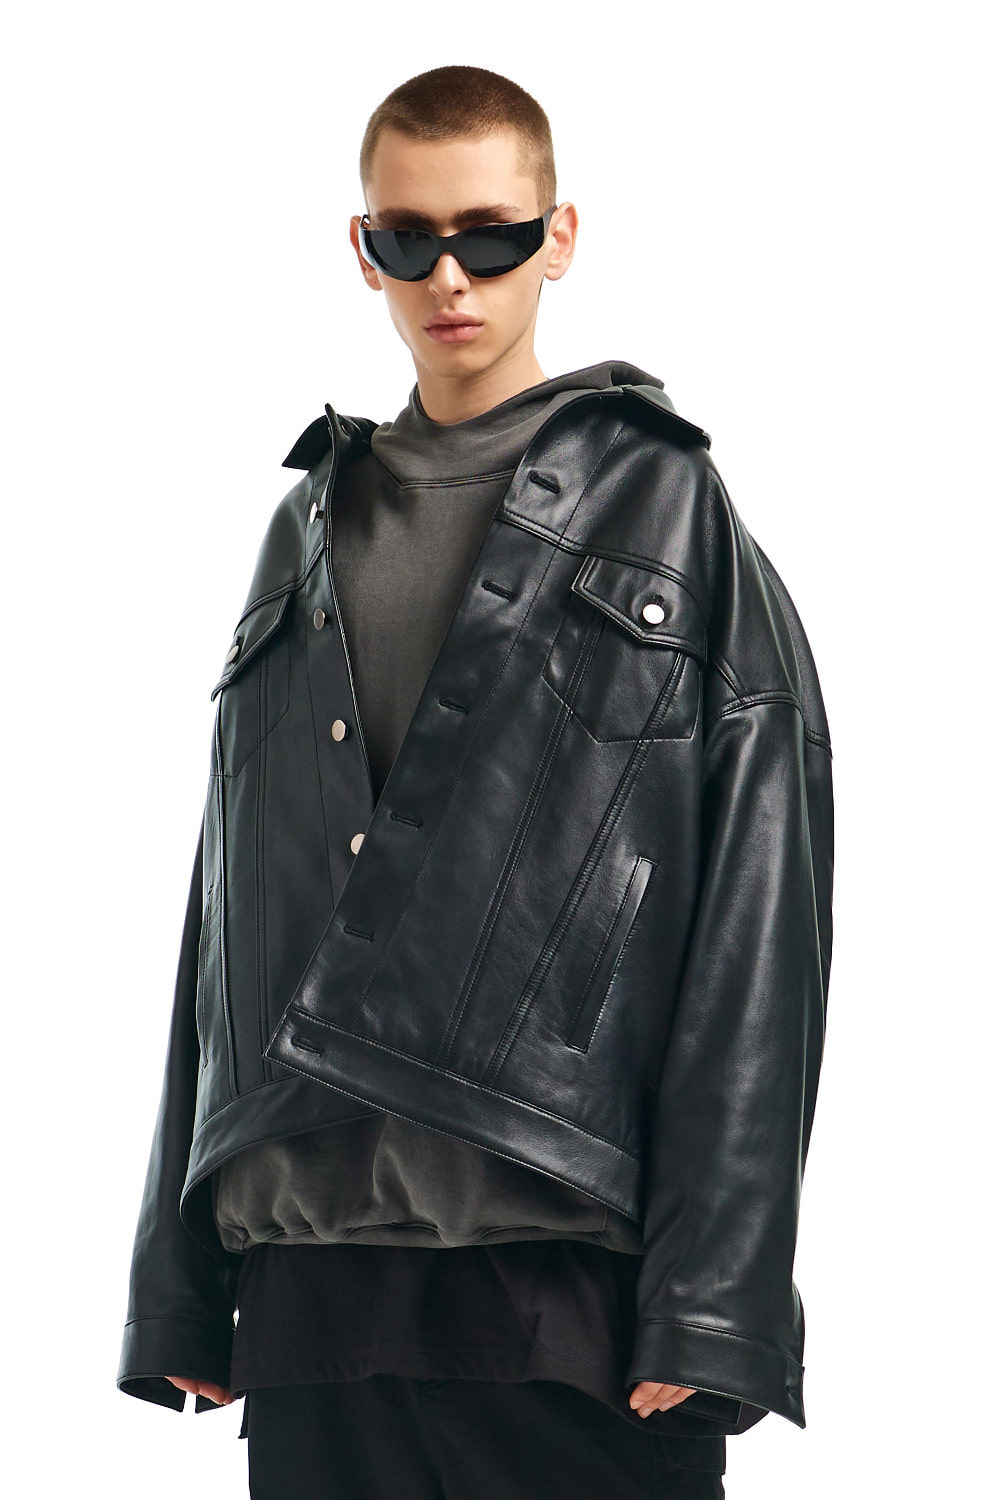 [-20%] 오버사이즈드 램스킨 트러커 재킷 IN 블랙